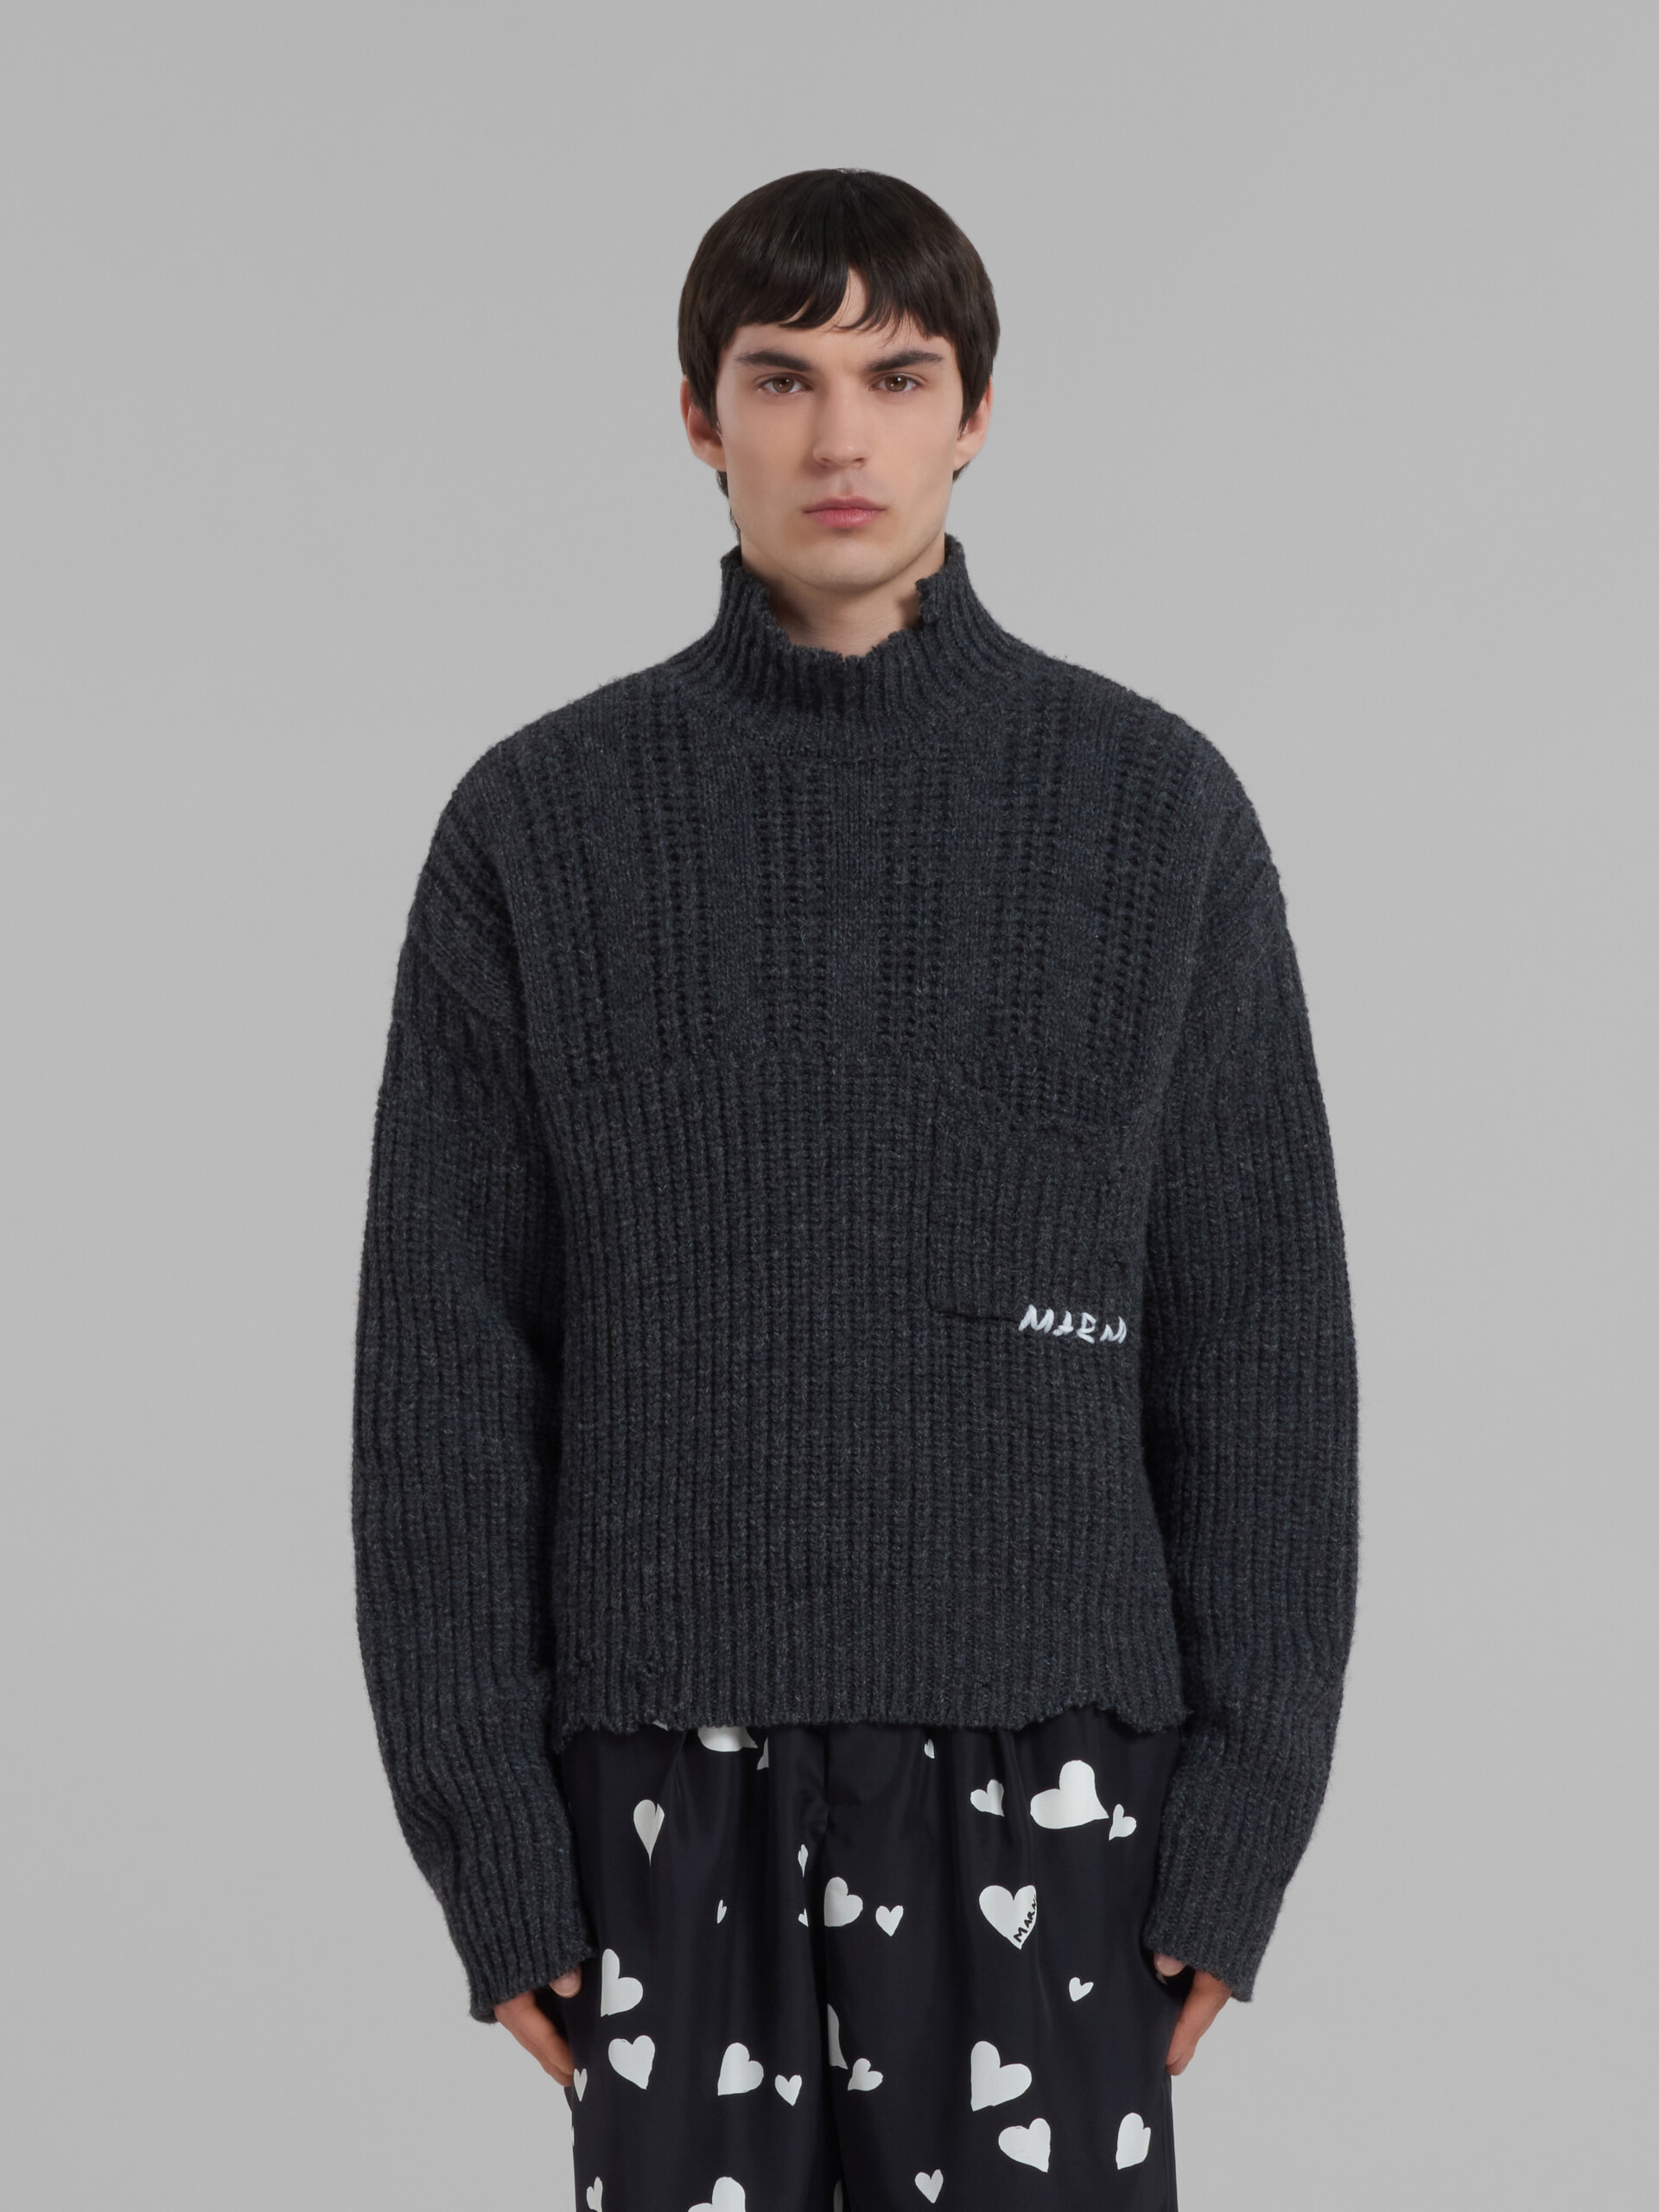 Grauer Pullover aus Schurwolle mit ausgefranstem Saum - Pullover - Image 2